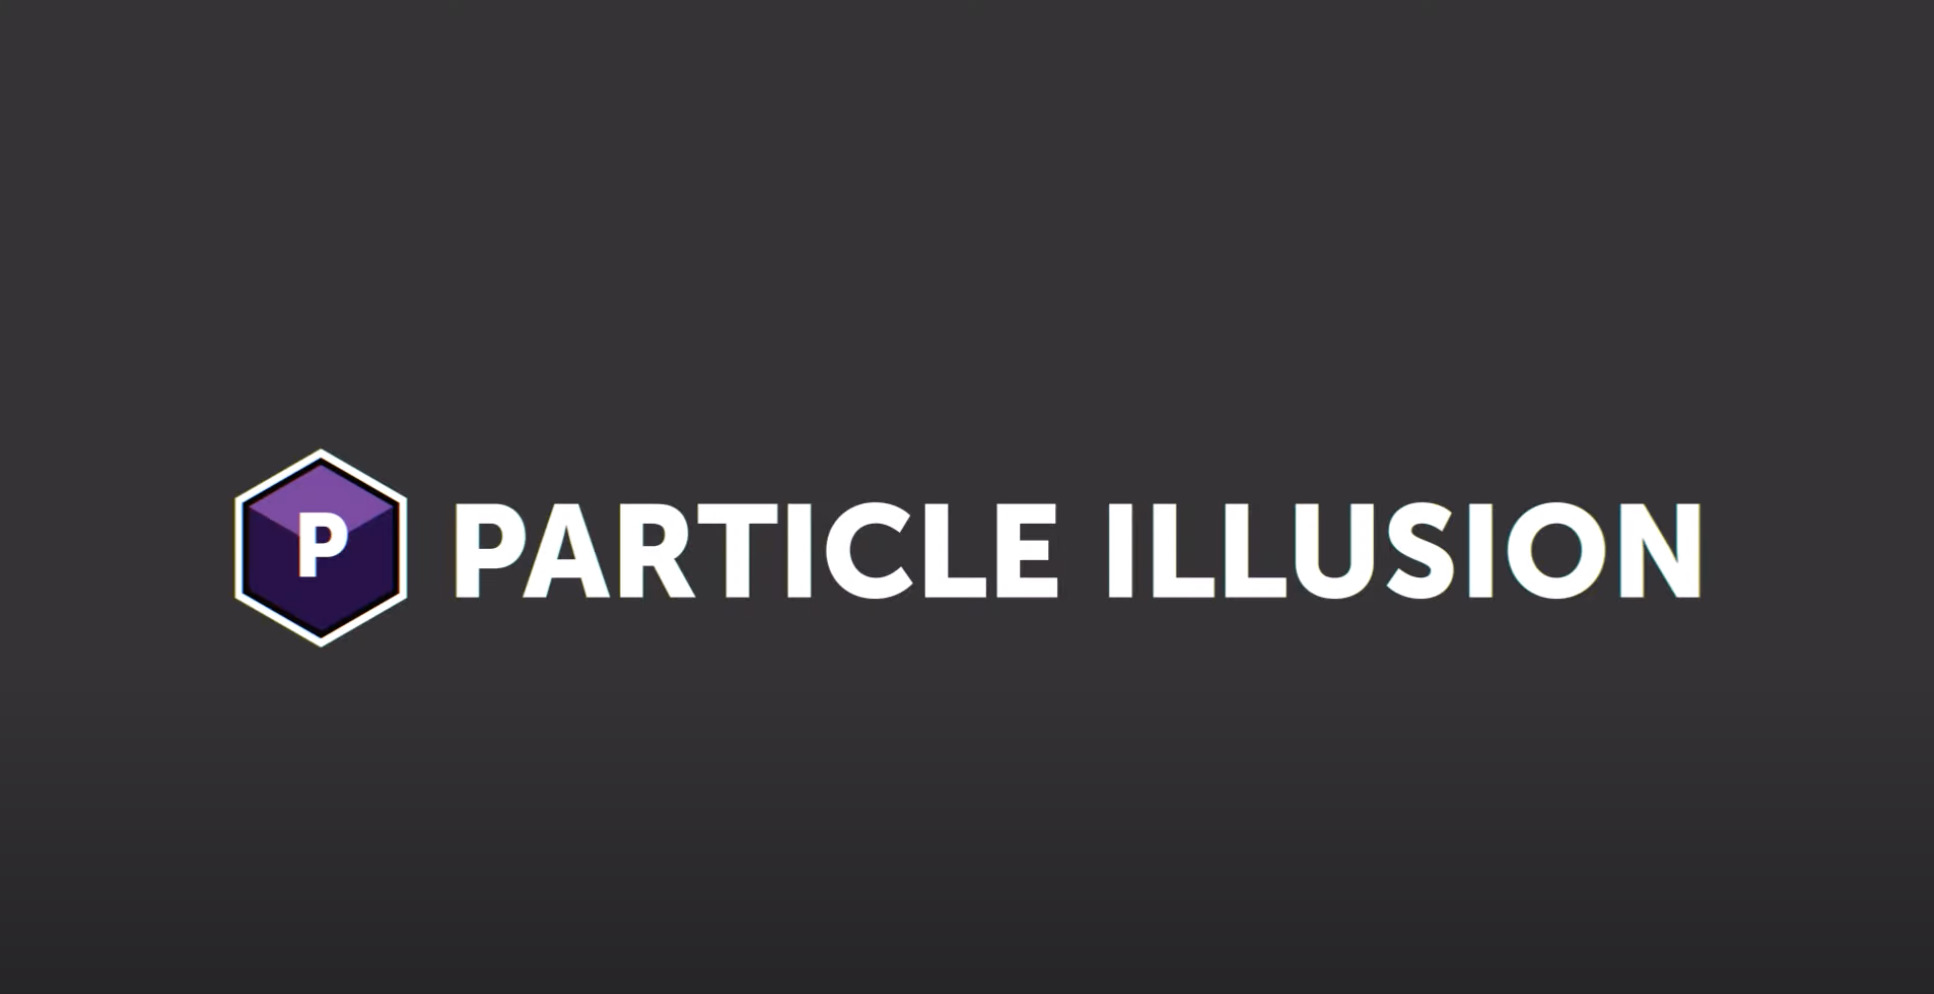 particle illusion 3.0 tutorial pdf